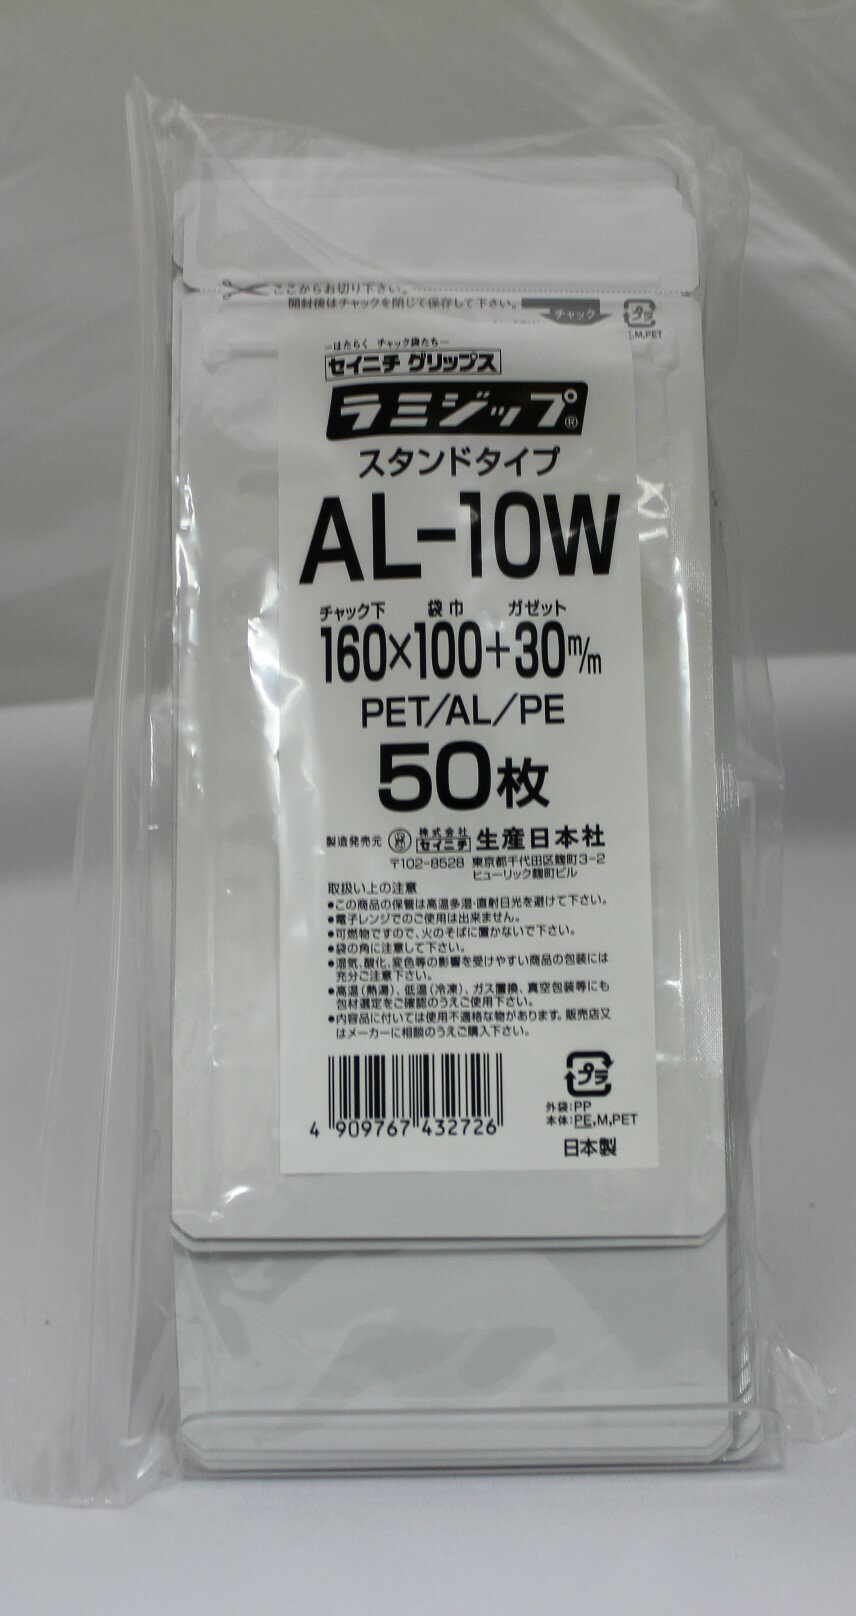 ラミジップ ホワイト アルミ バリア スタンド AL-10W チャック付ポリ袋 50枚入 日本製